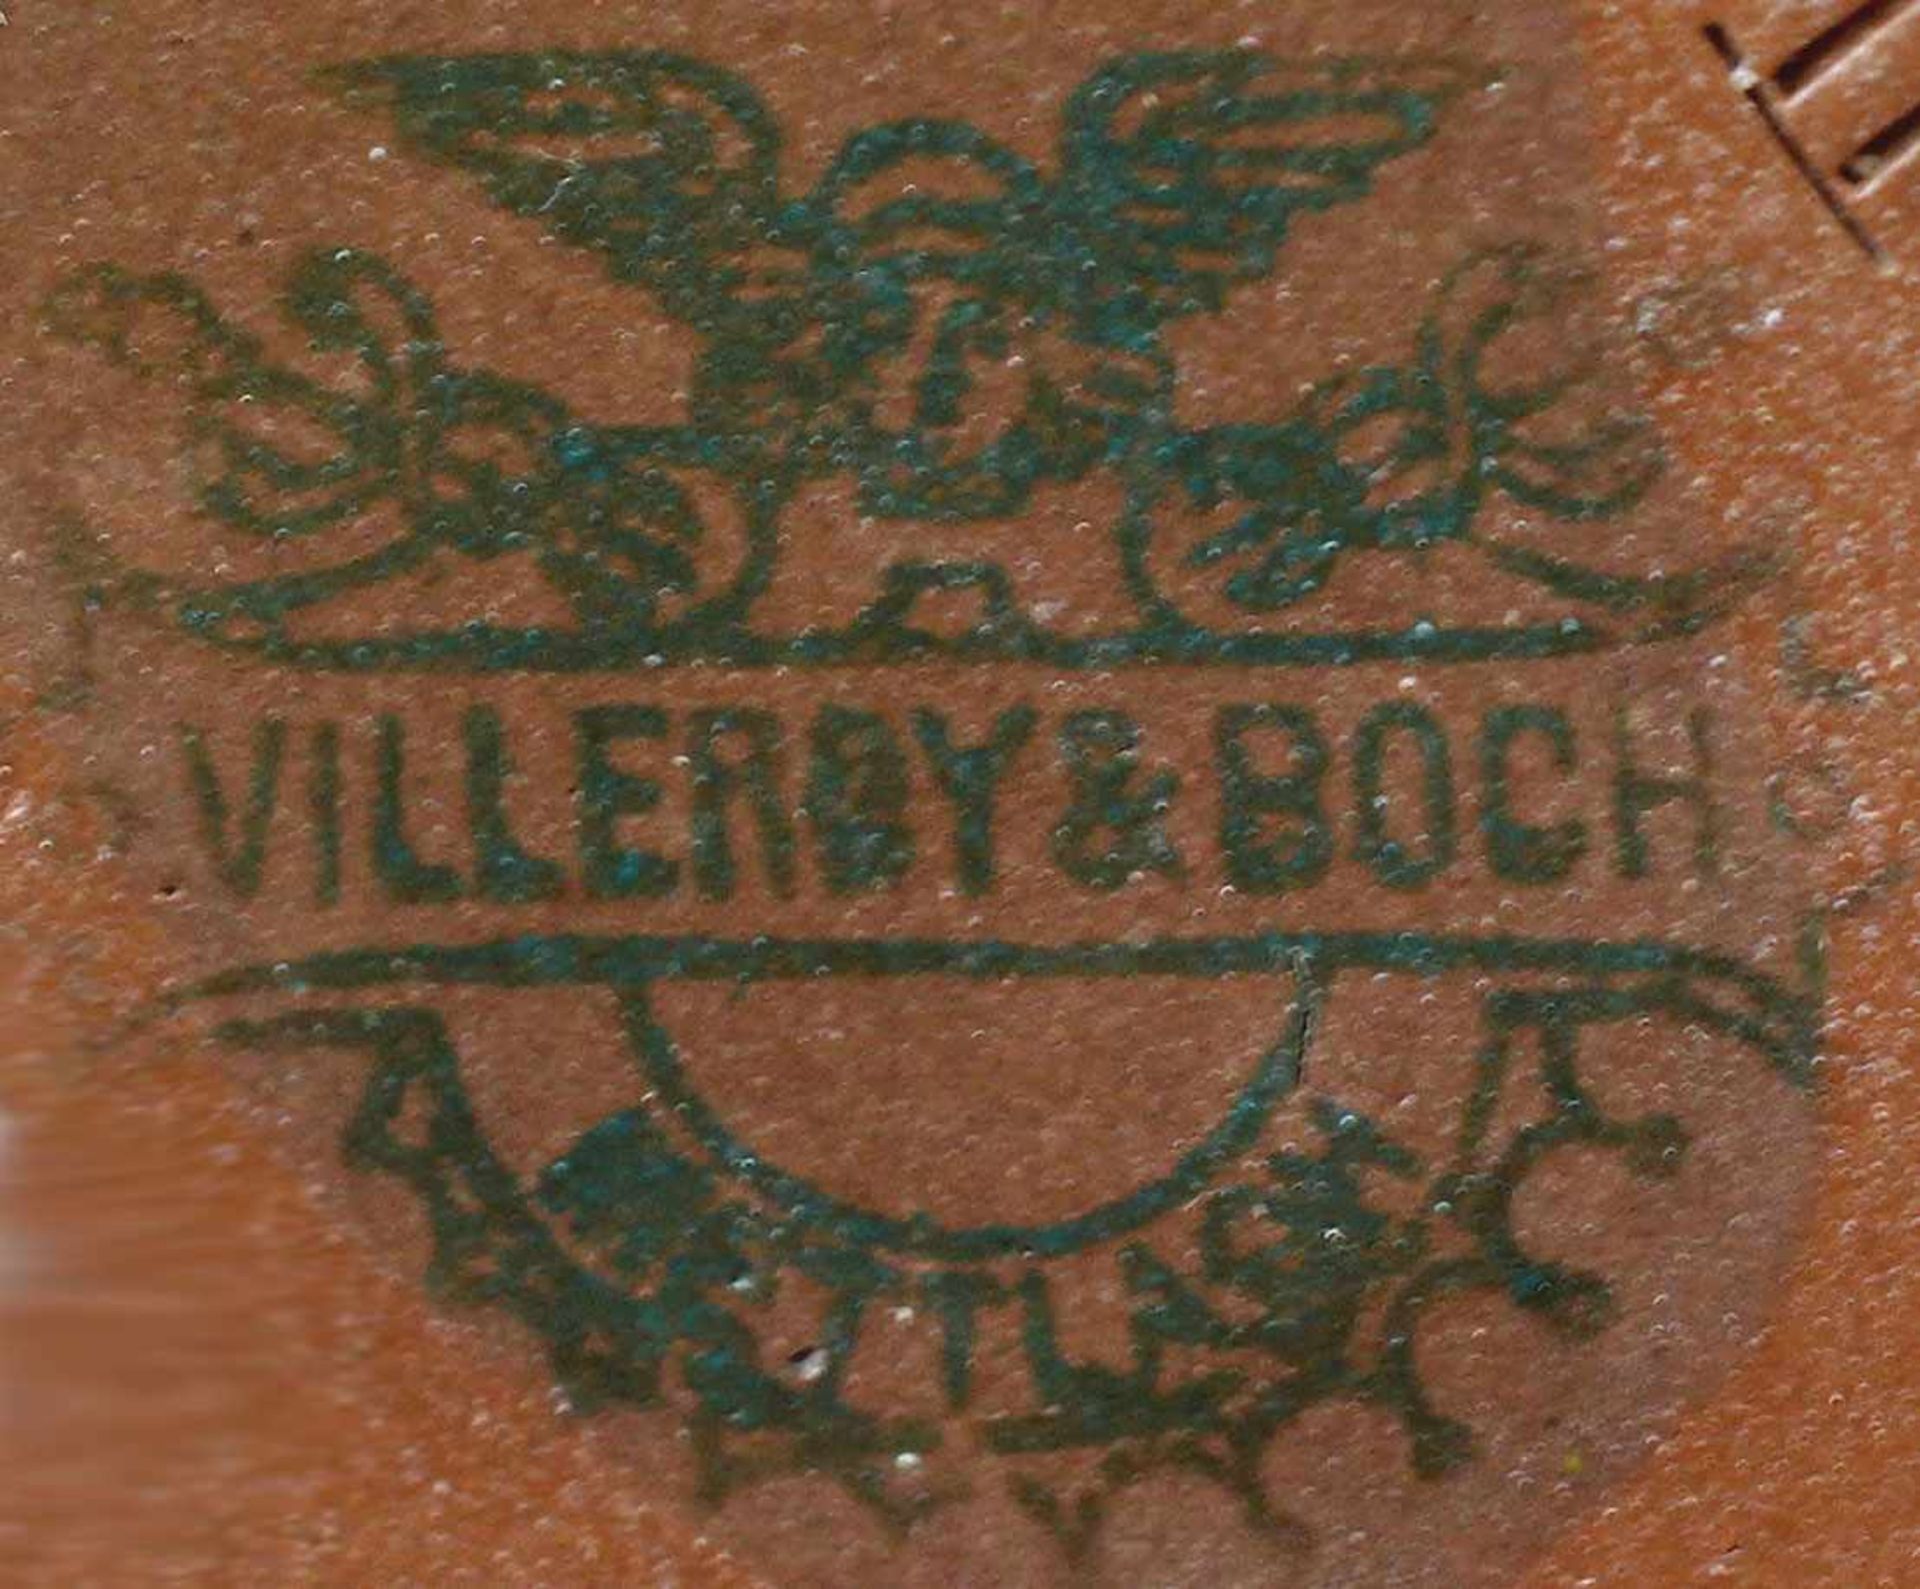 Relief-Kanne Mettlach grüne Merkurmarke Villeroy & Boch Mettlach, 1874-1909, Mod.-Nr. 1028, - Bild 3 aus 3